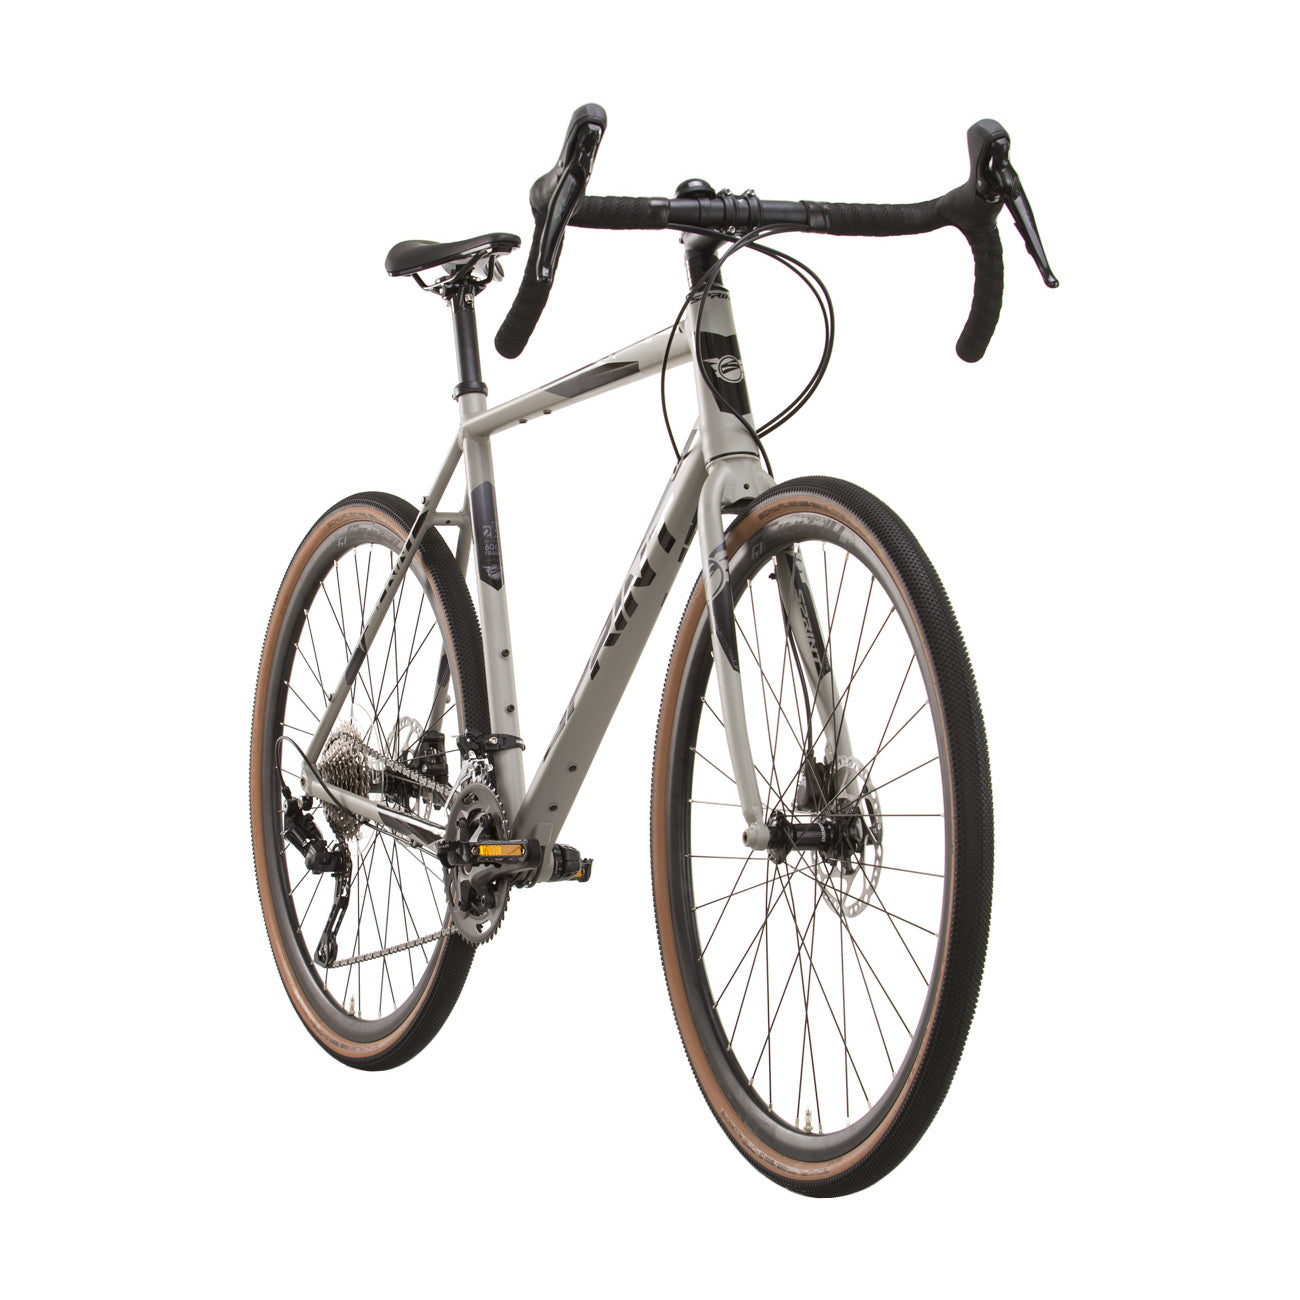 herren-gravel-bike-fahrrad-whister-shimano-grx-400-2-9-gang-52-56-cm-schwarz-grau-3